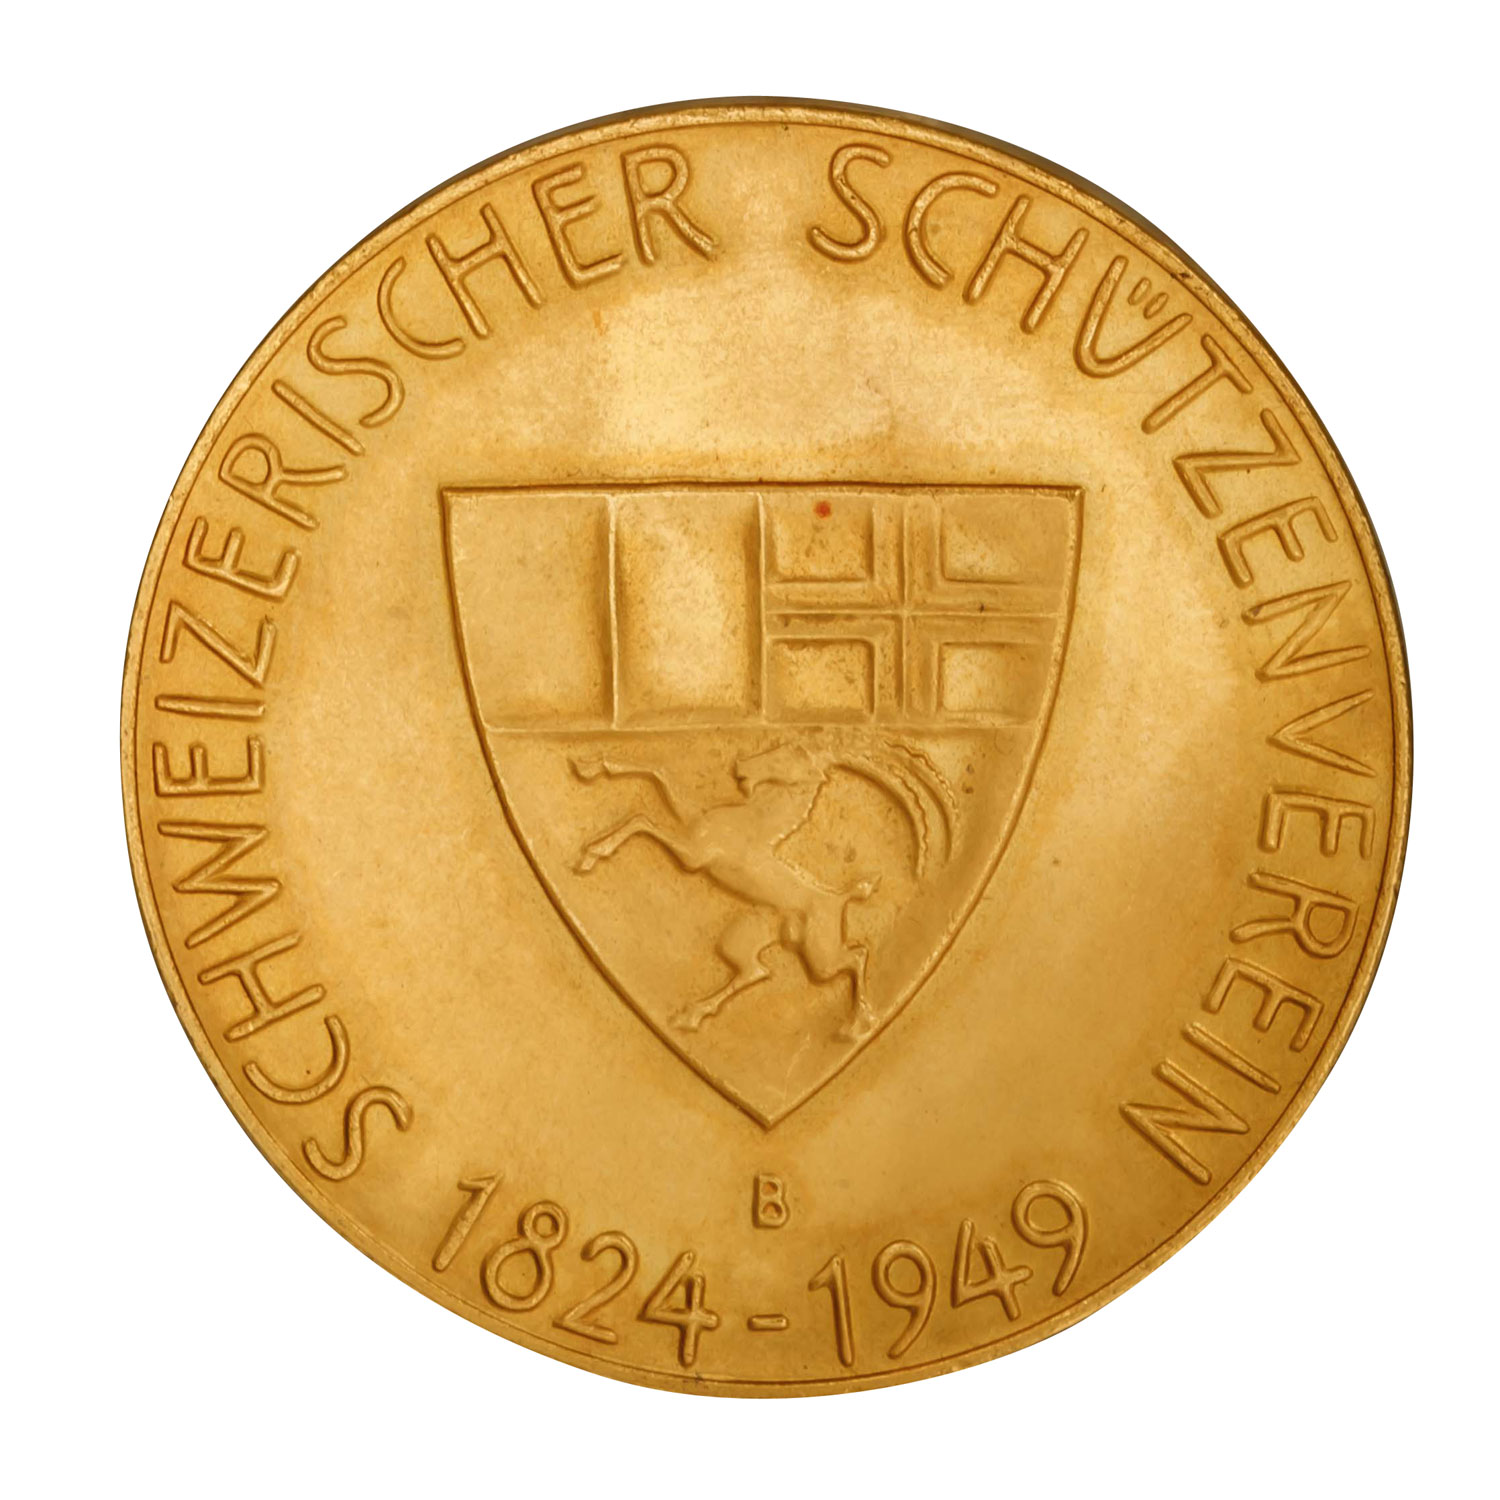 Schweiz - Schützentaler (Medaille) 1949, Eidgenössisches Schützenfest Graubünden, - Image 2 of 2